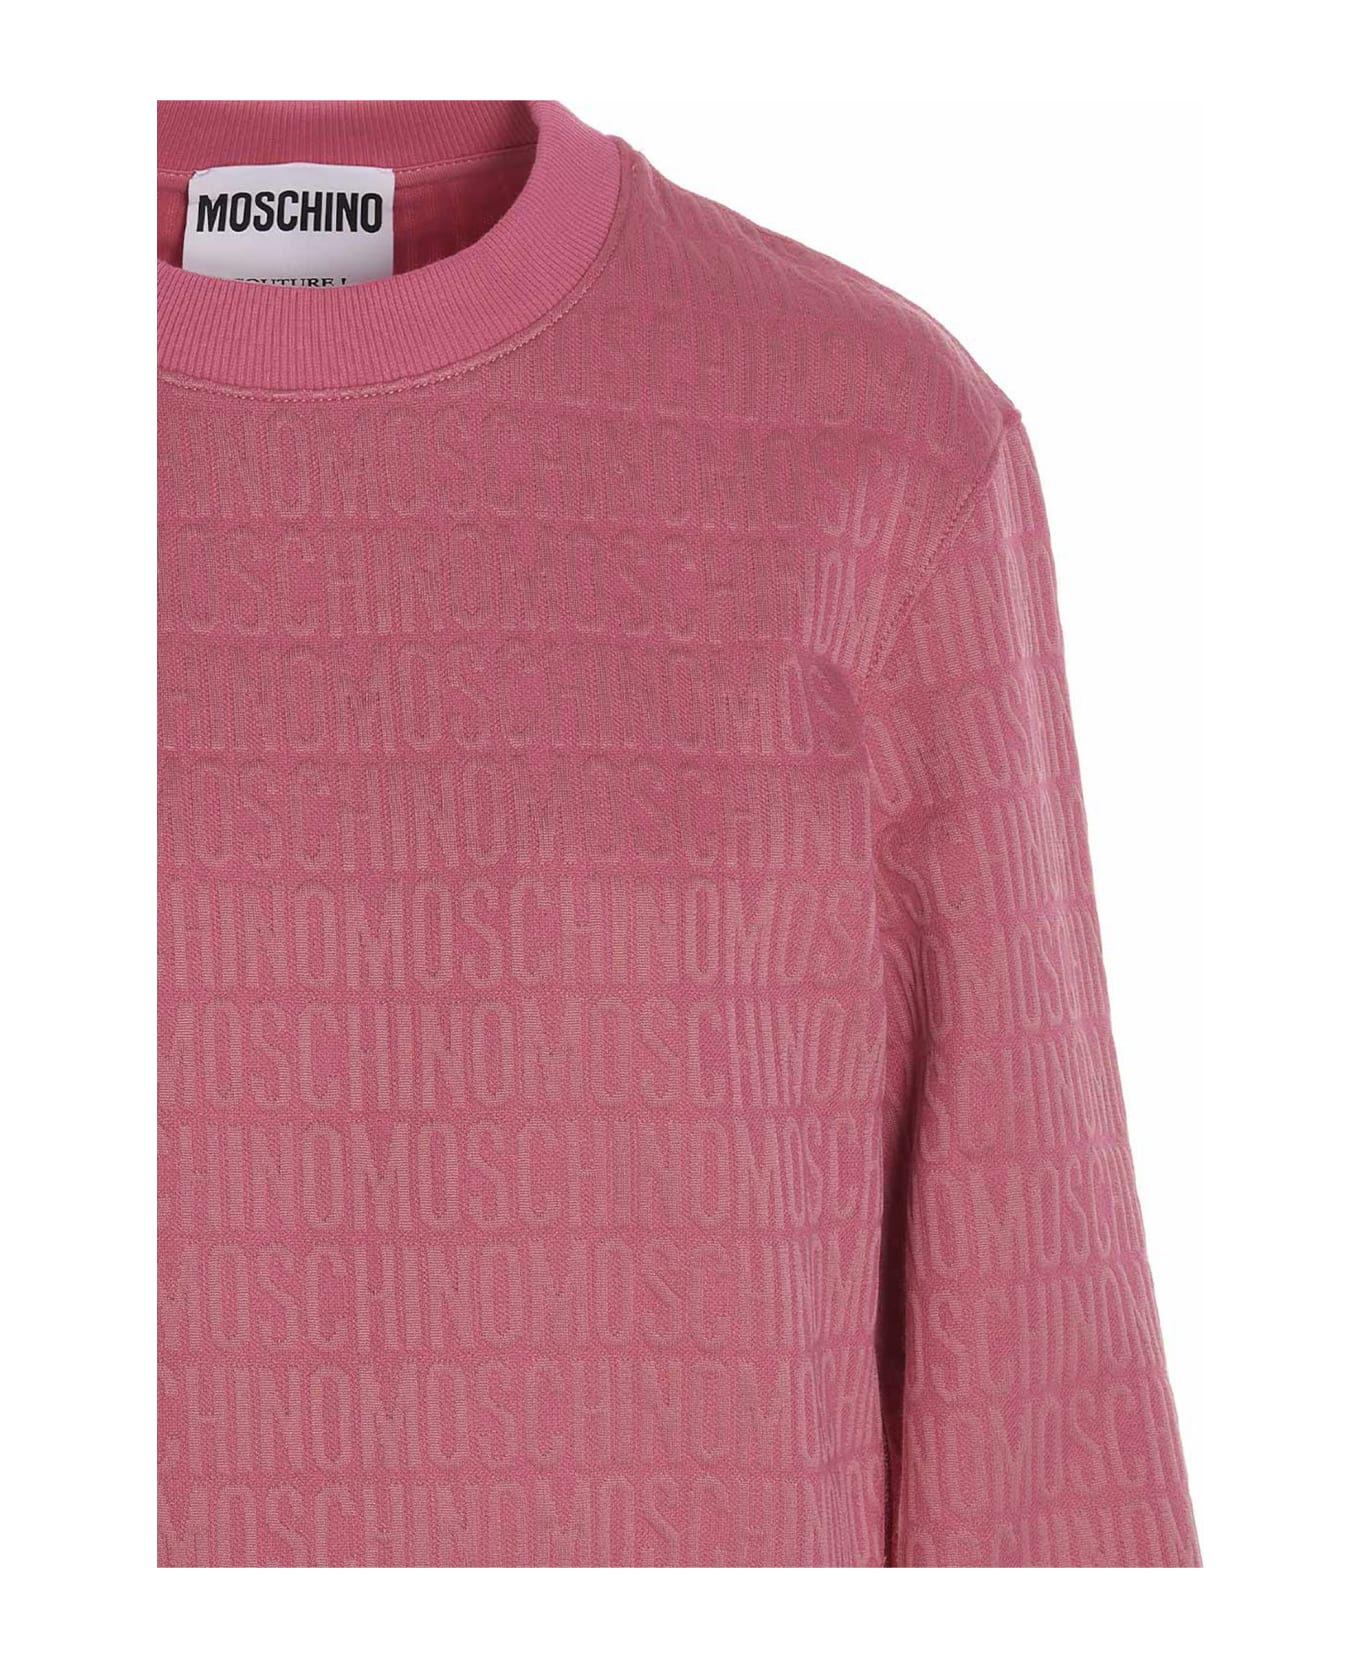 Moschino 'monogram' Sweatshirt - Fuchsia